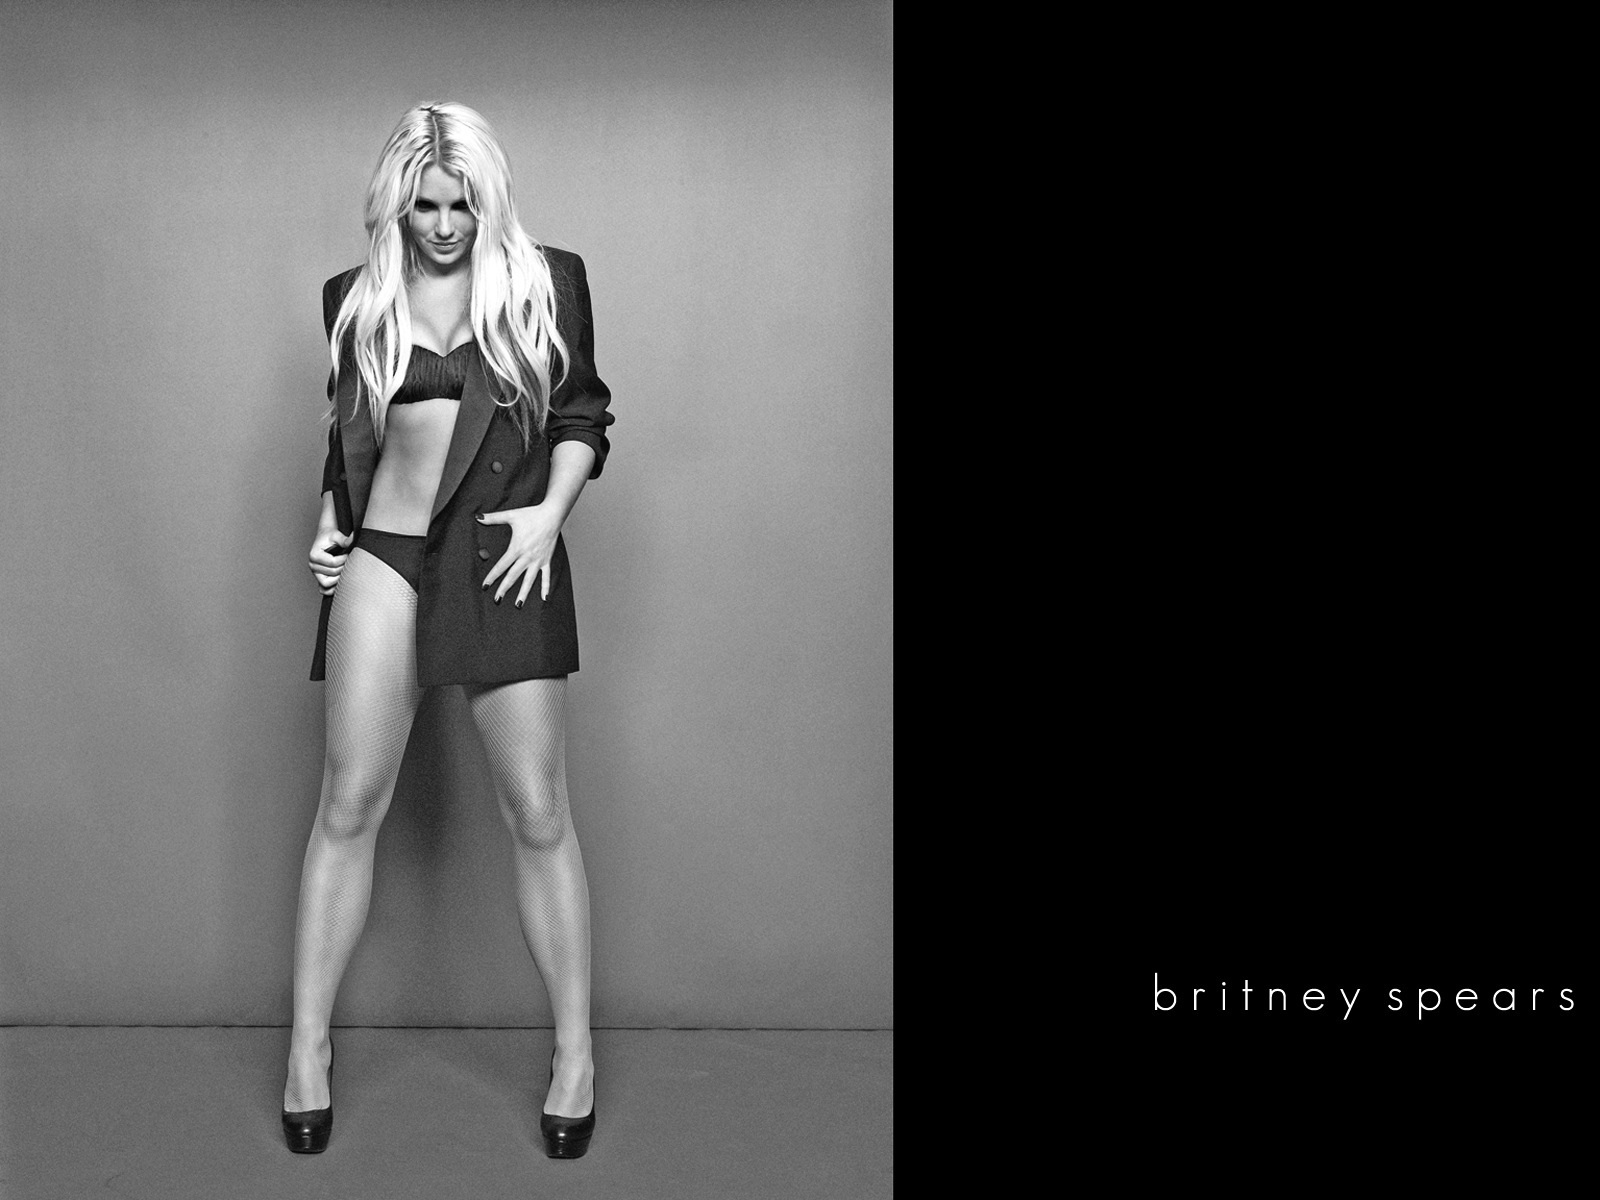 Britney Spears Britney Spears Wallpaper 20036040 Fanpop